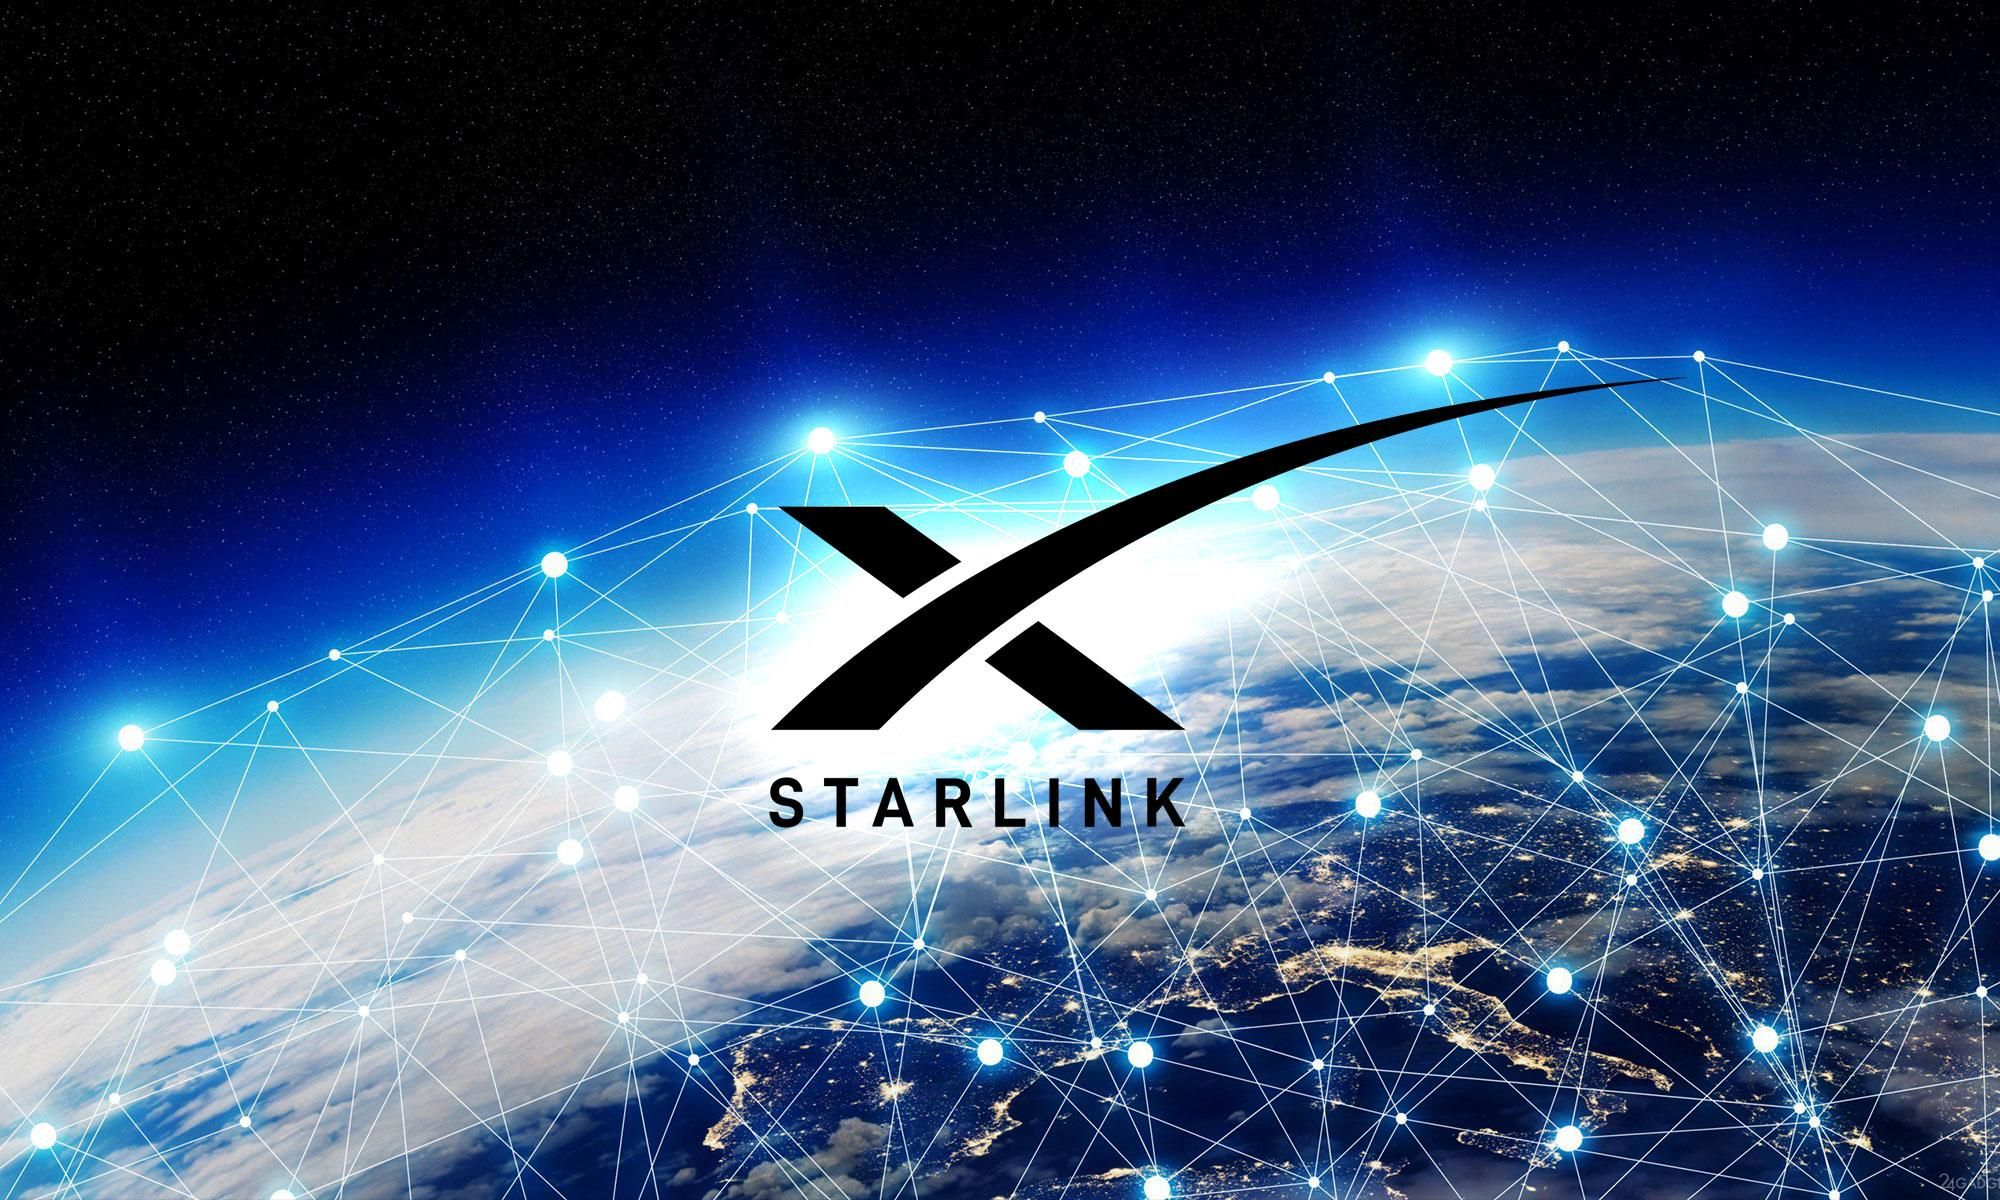 Себестоимость комплекта Starlink 1500 долларов, но продают его за 499